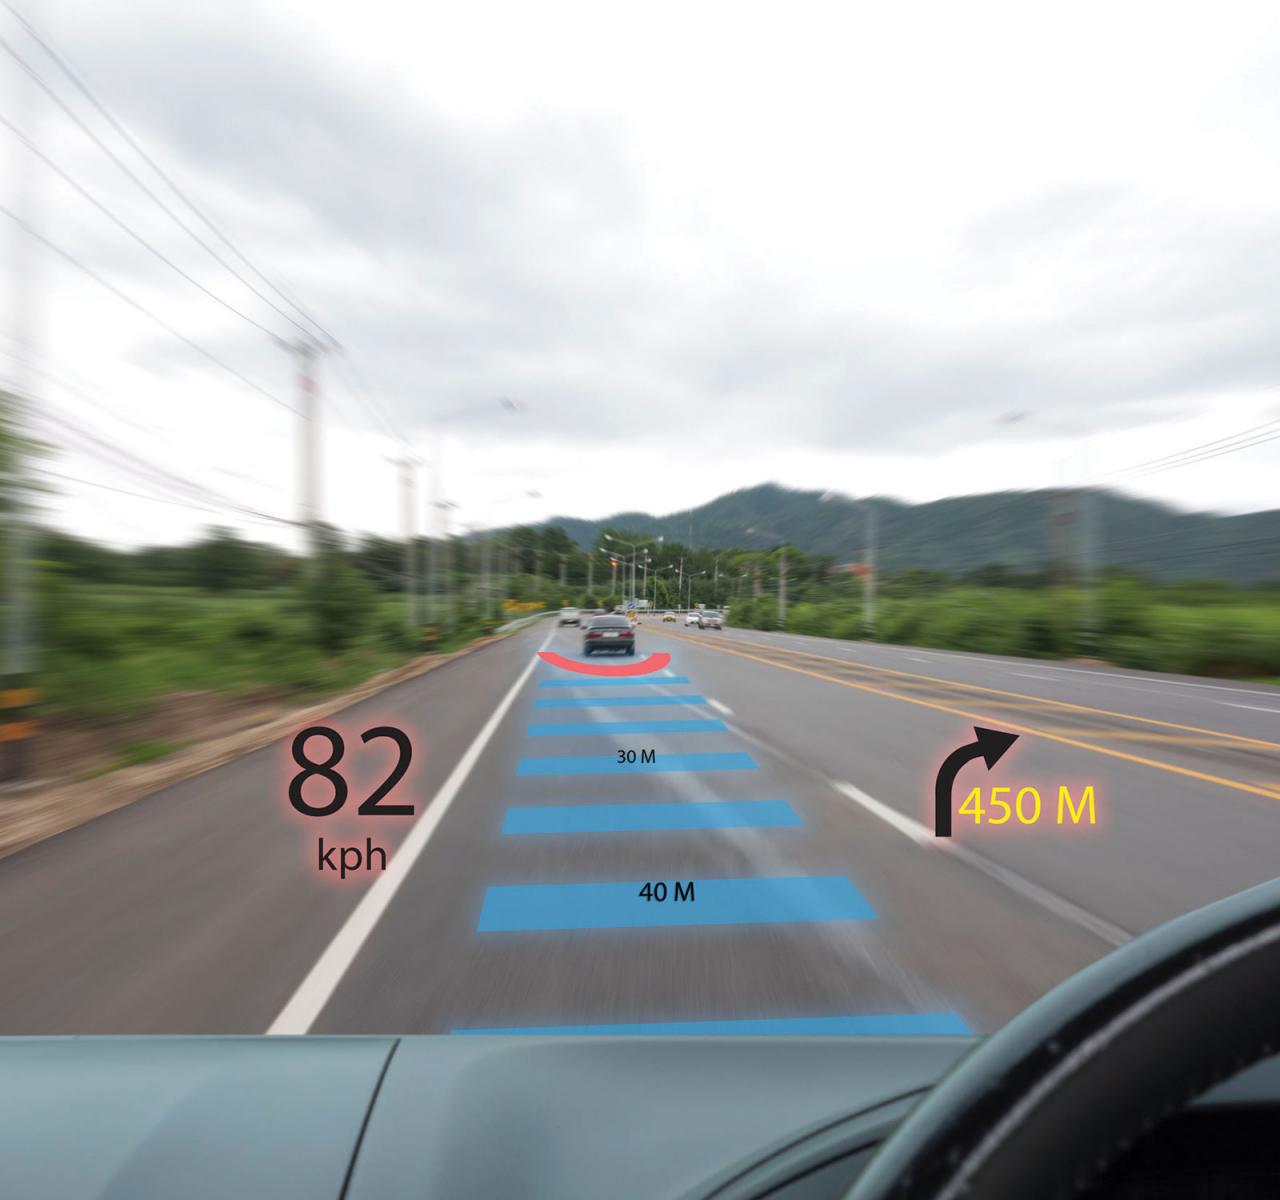 远程前视激光雷达对于自动驾驶车辆的部署至关重要